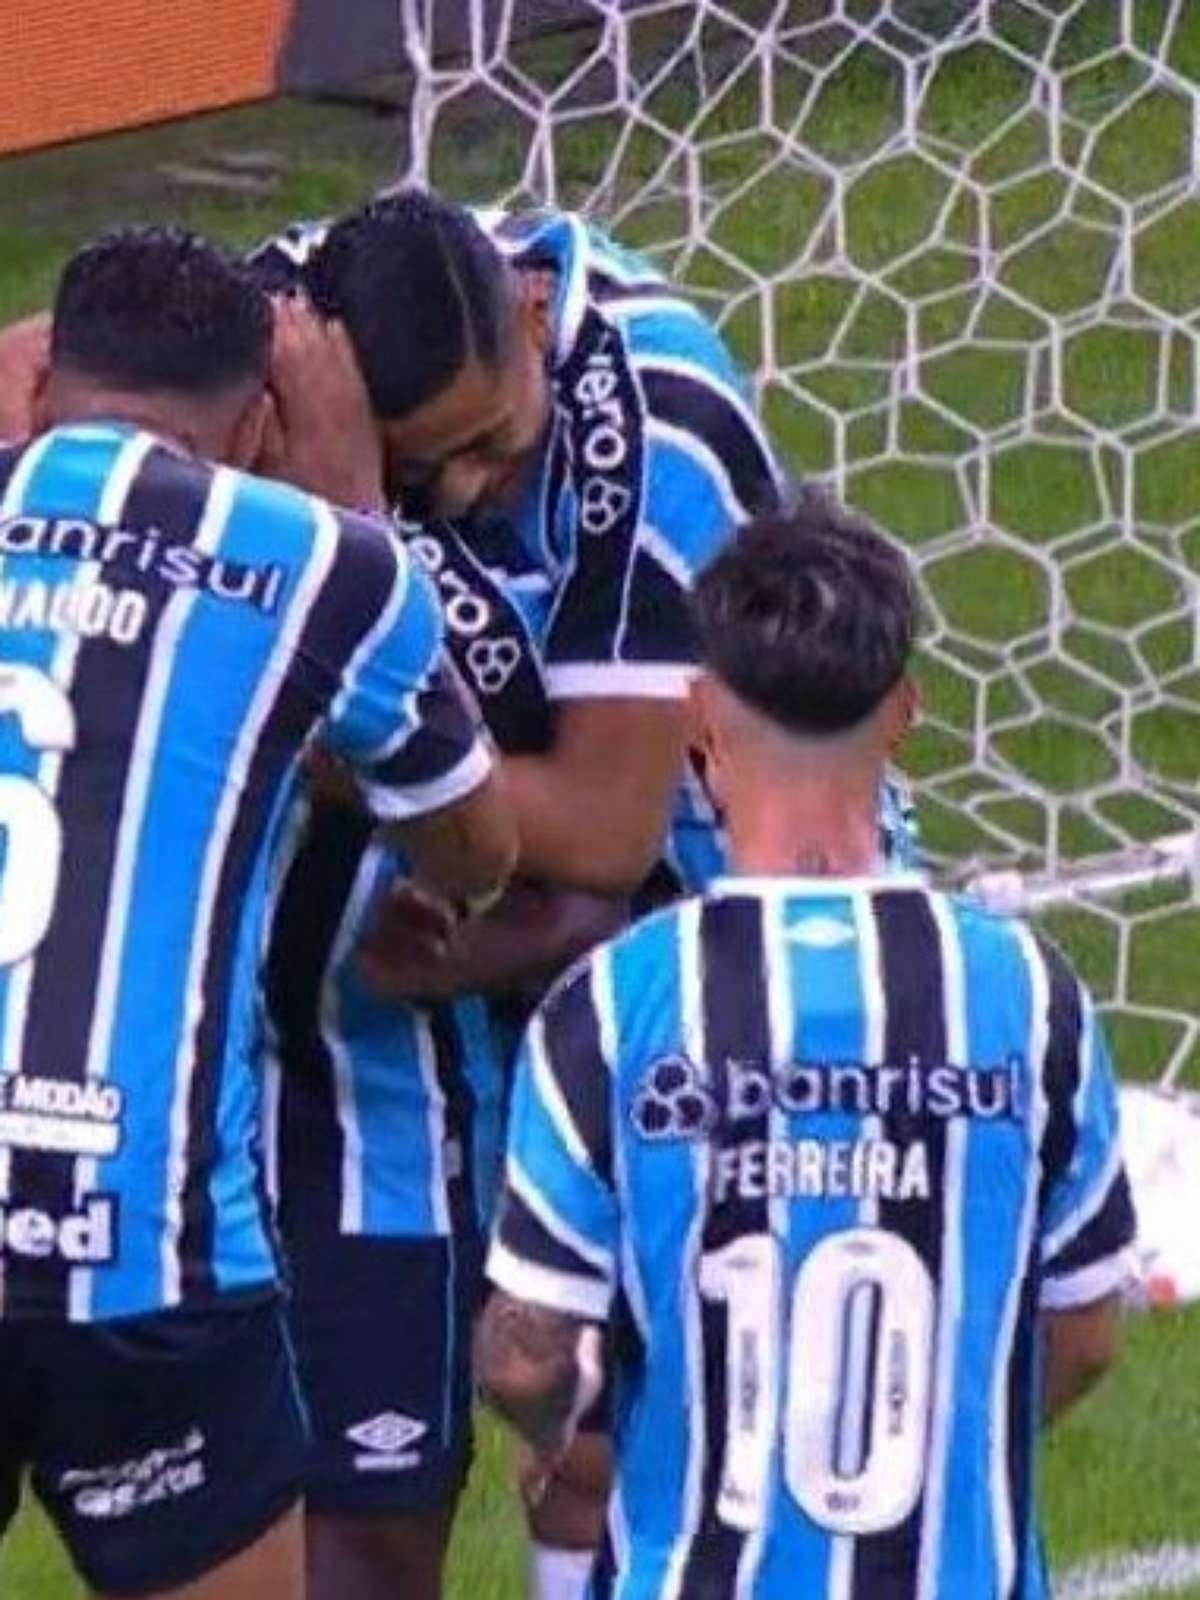 Atlético-MG se impõe, vence o Grêmio por 3 a 0 e entra no G4